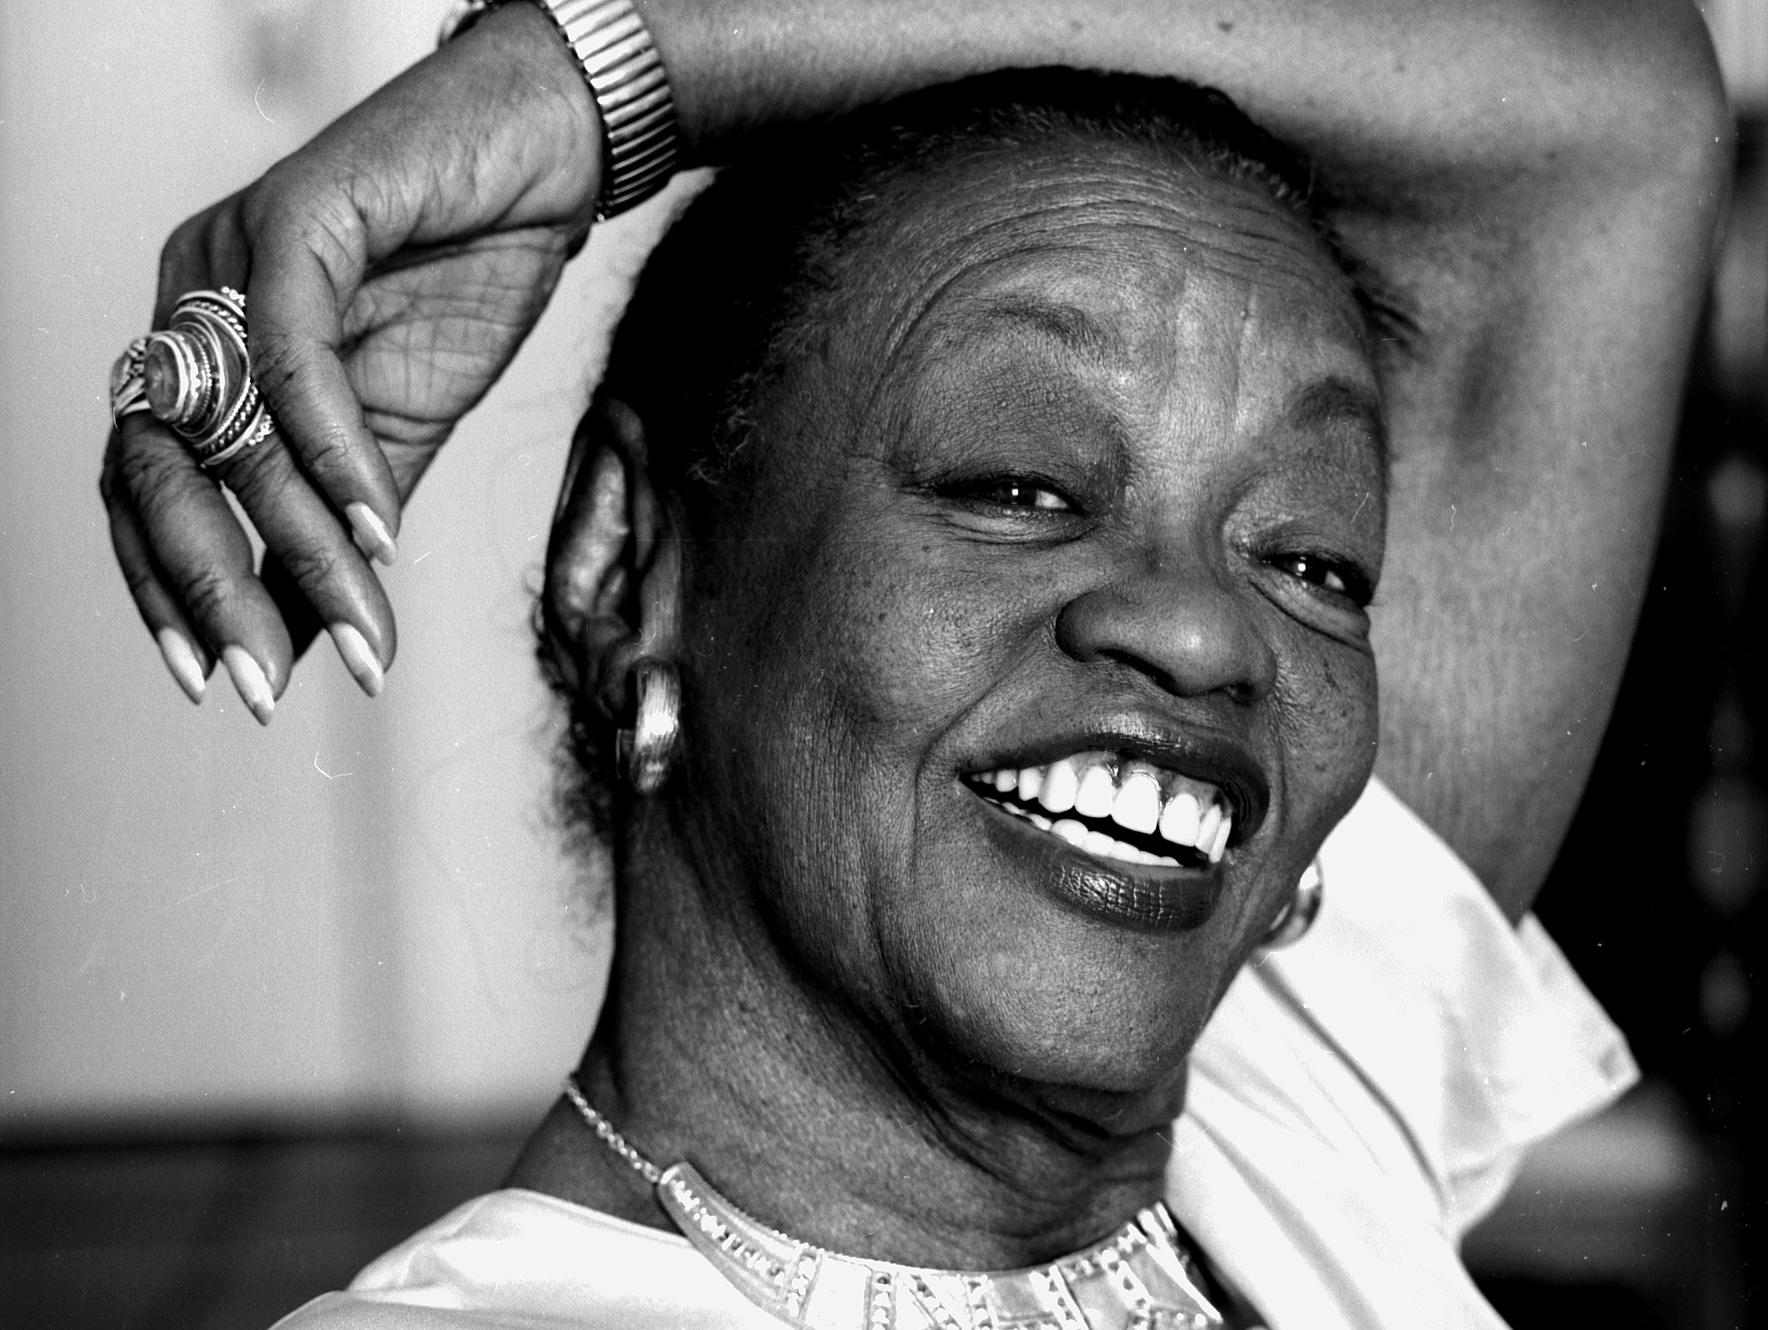 Considerada pioneira e inspiração para muitos, Ruth de Souza abriu portas para outros artistas negros no país. Saiba mais!